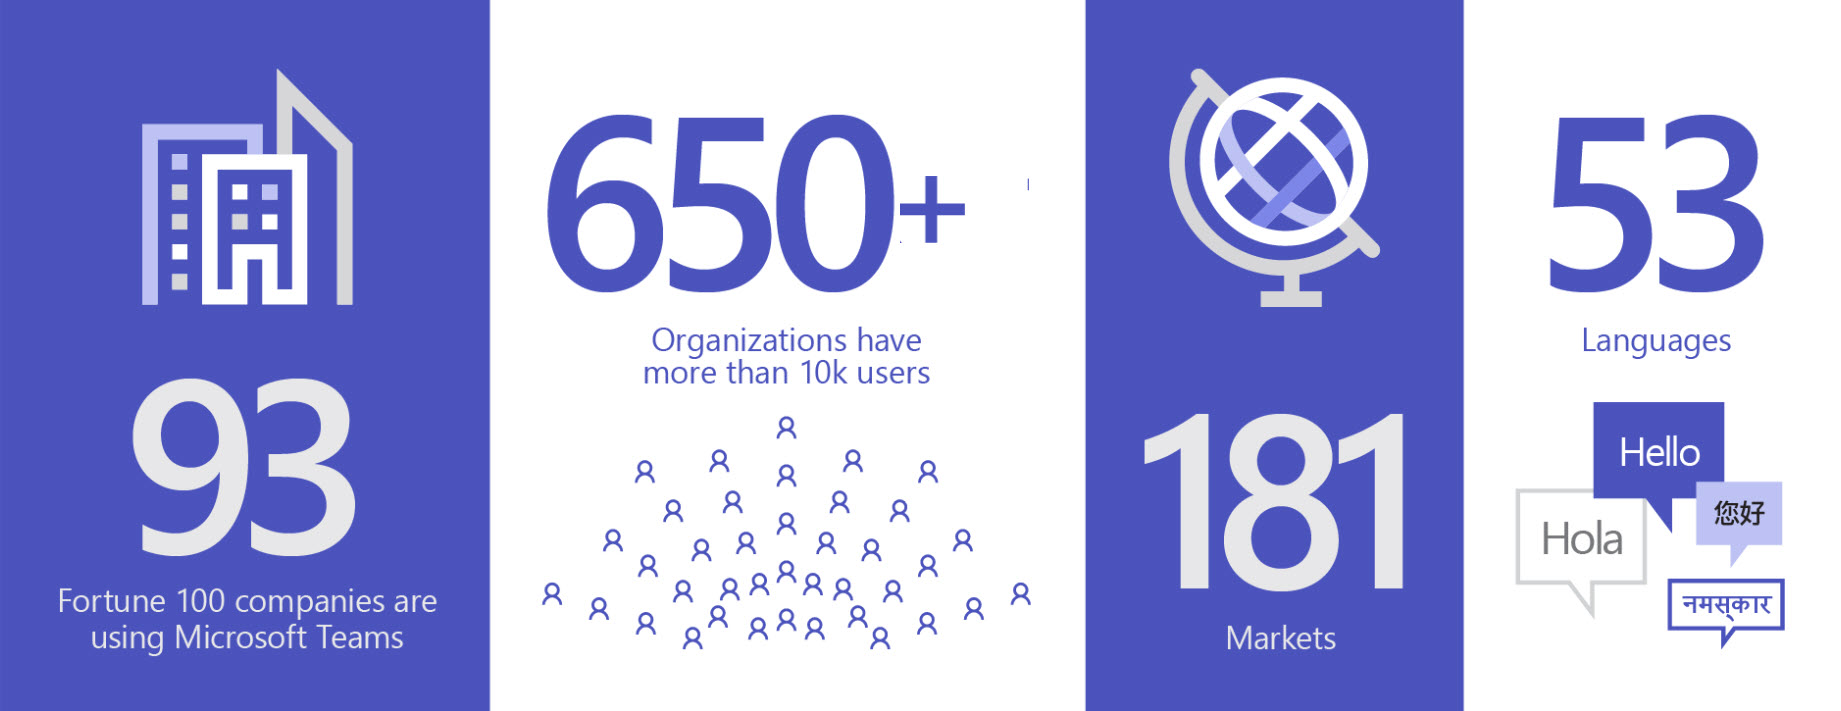 Billede, der viser 93 organisationer, der bruger Teams, over 650 organisationer har mere end 10.000 brugere på 181 markeder og 53 sprog.